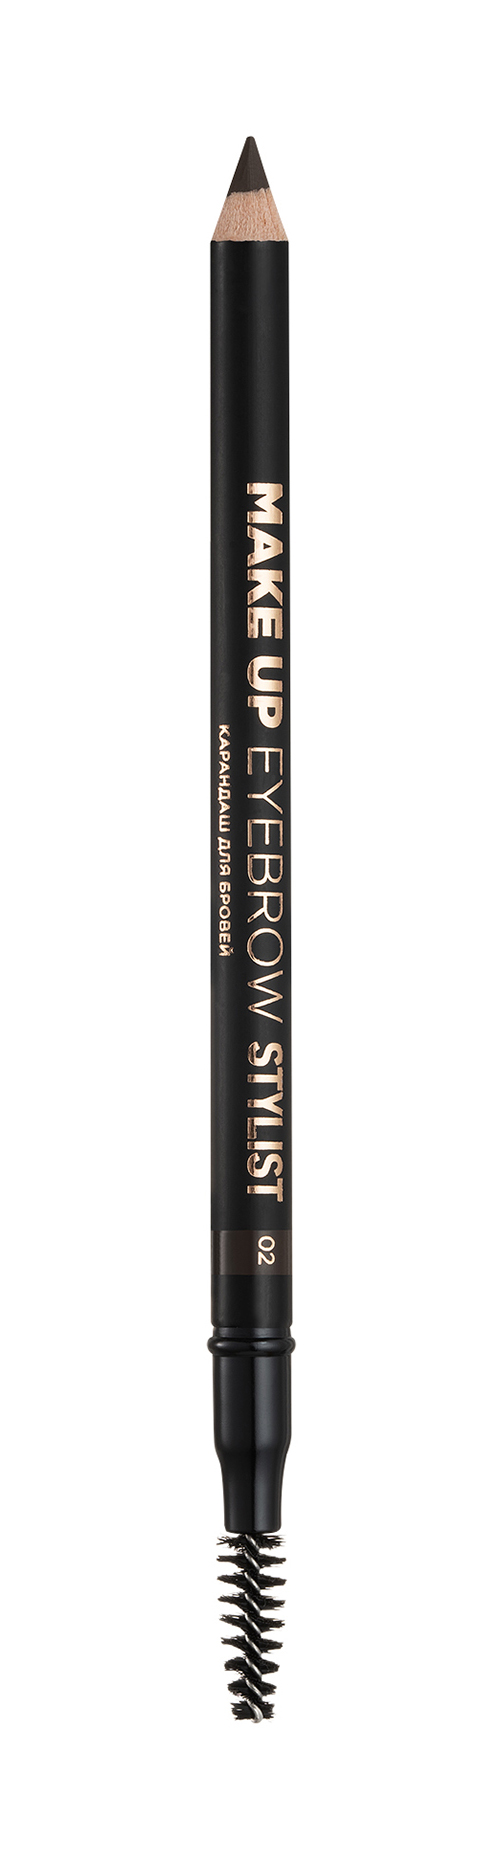 Карандаш для бровей Eva Mosaic Make up Eyebrow Stylist карандаш для бровей eva mosaic flat автоматический тон 3 коричневый 0 25 г